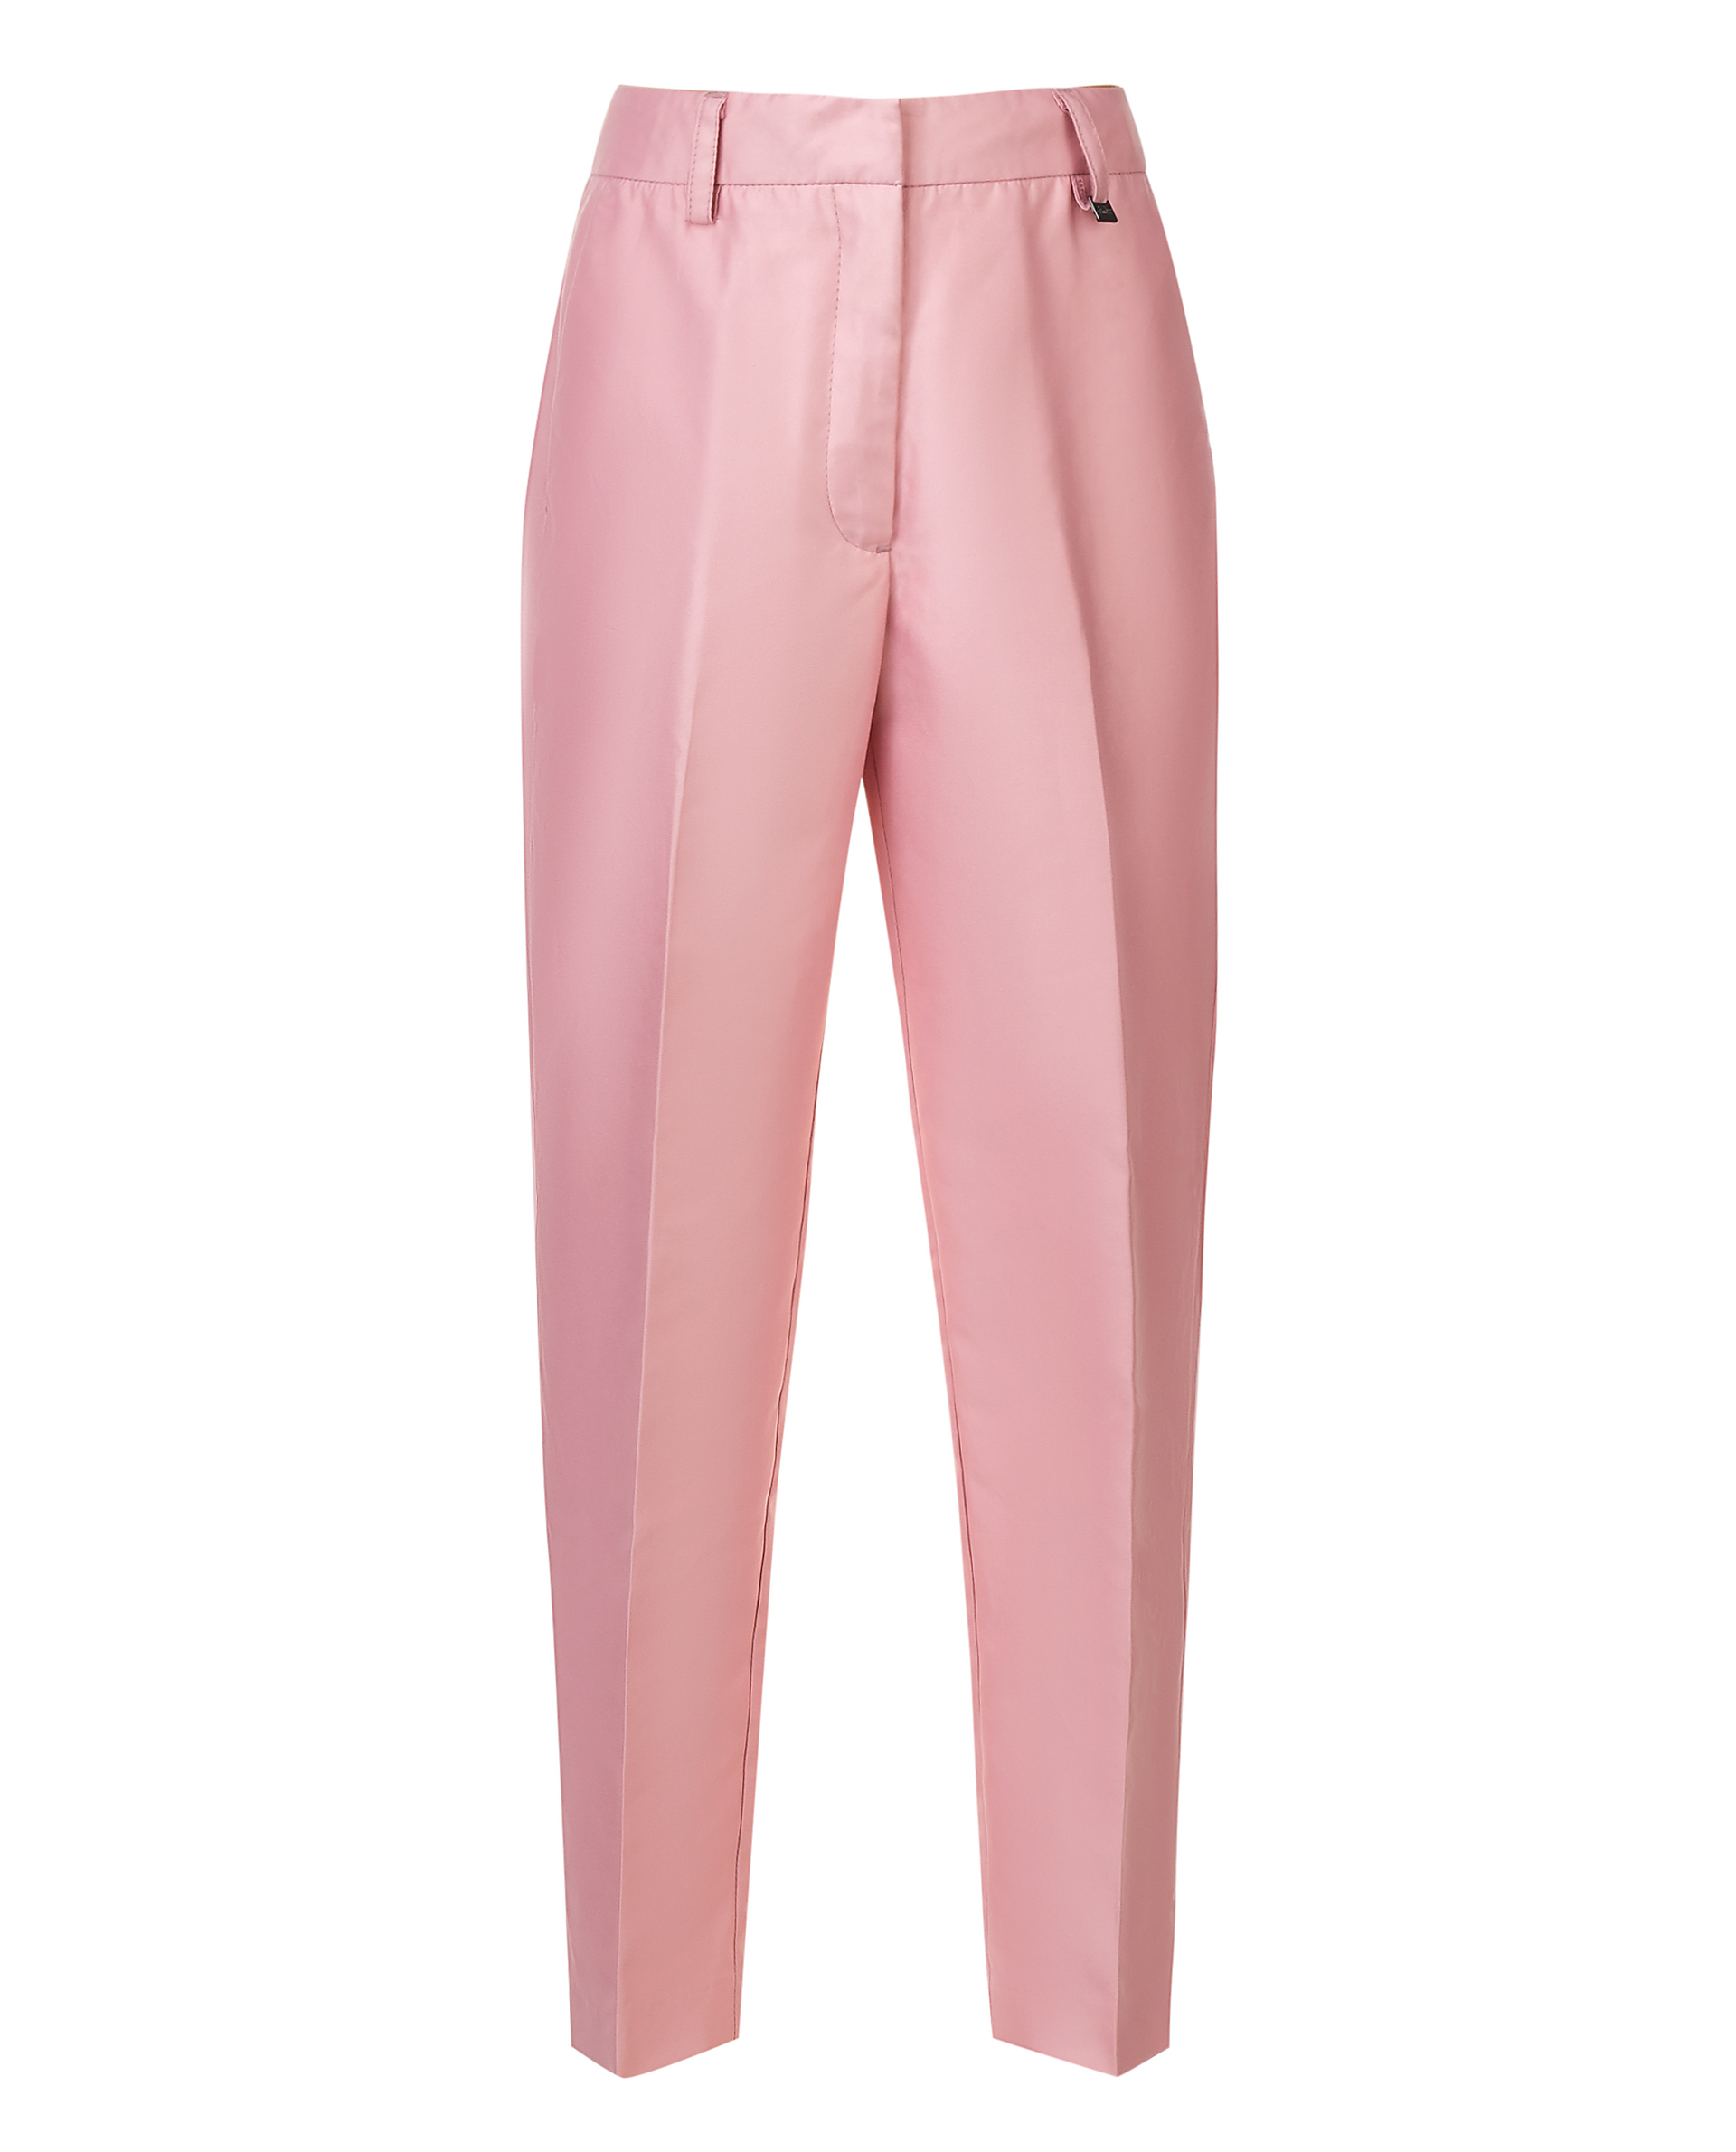 Купить 119GPGJC6301, Розовые брюки Gulliver, розовый, 164, Женский, ВЕСНА/ЛЕТО 2019 (shop: GulliverMarket Gulliver Market)